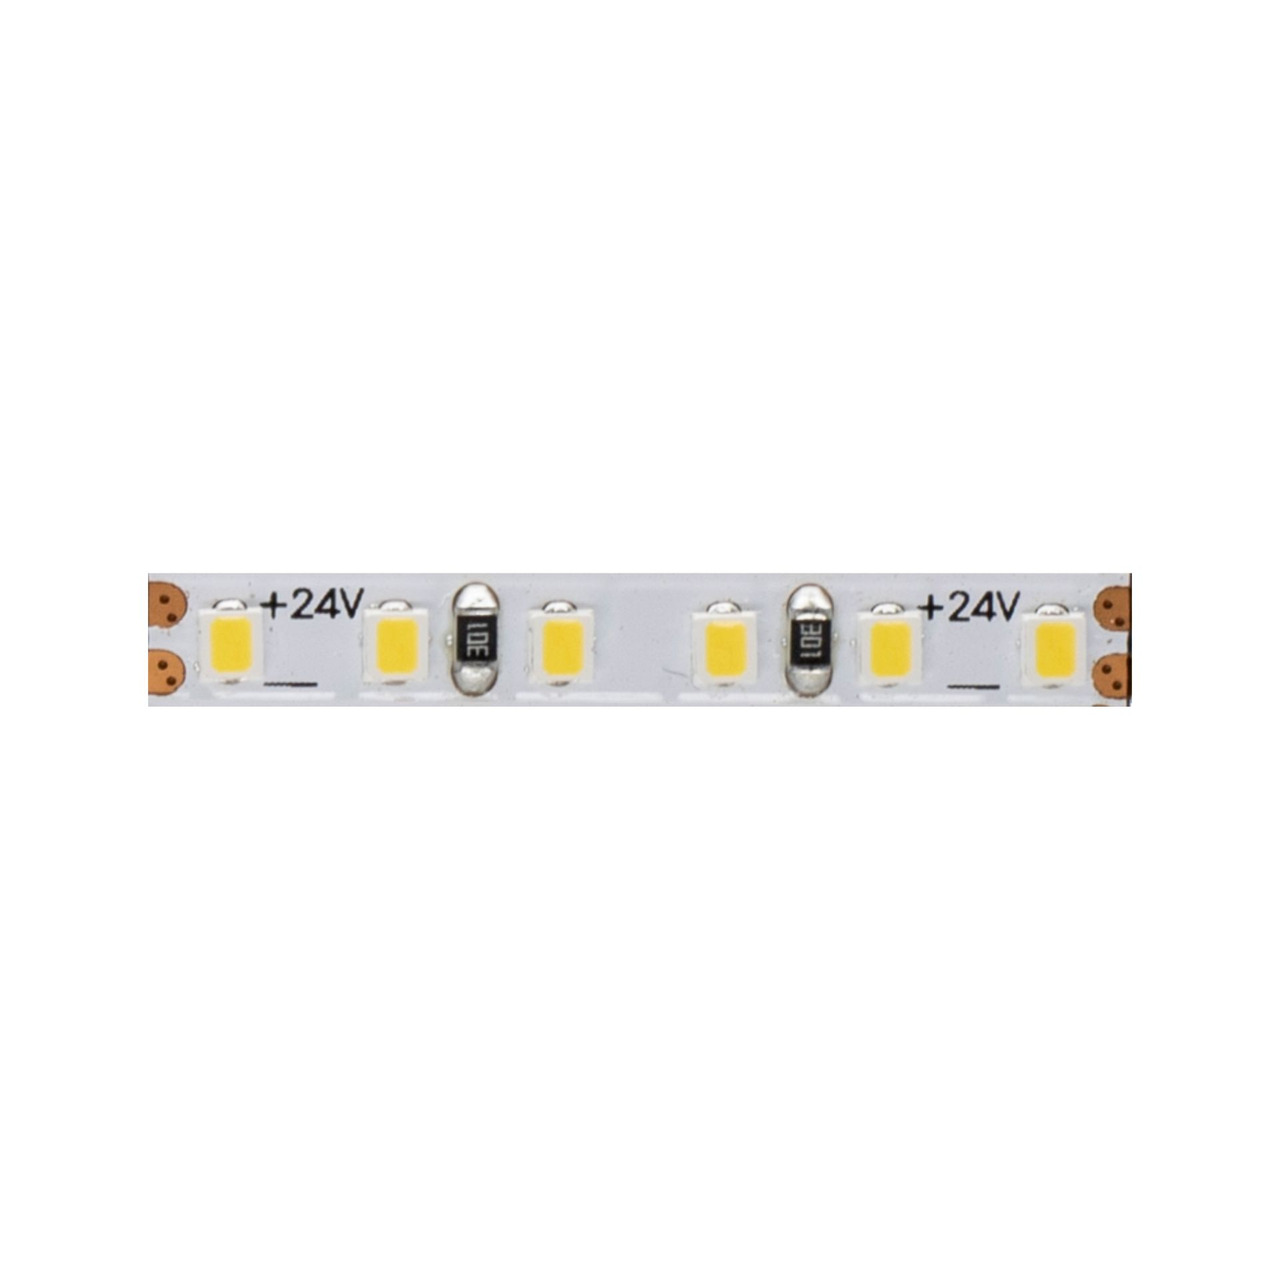 Beneito 5-m-LED-Streifen FINE-49- 50 W- 24 V DC- 6000 K- 90 Ra- 10 W-m- 740 lm-m- 204 LEDs-m- IP20